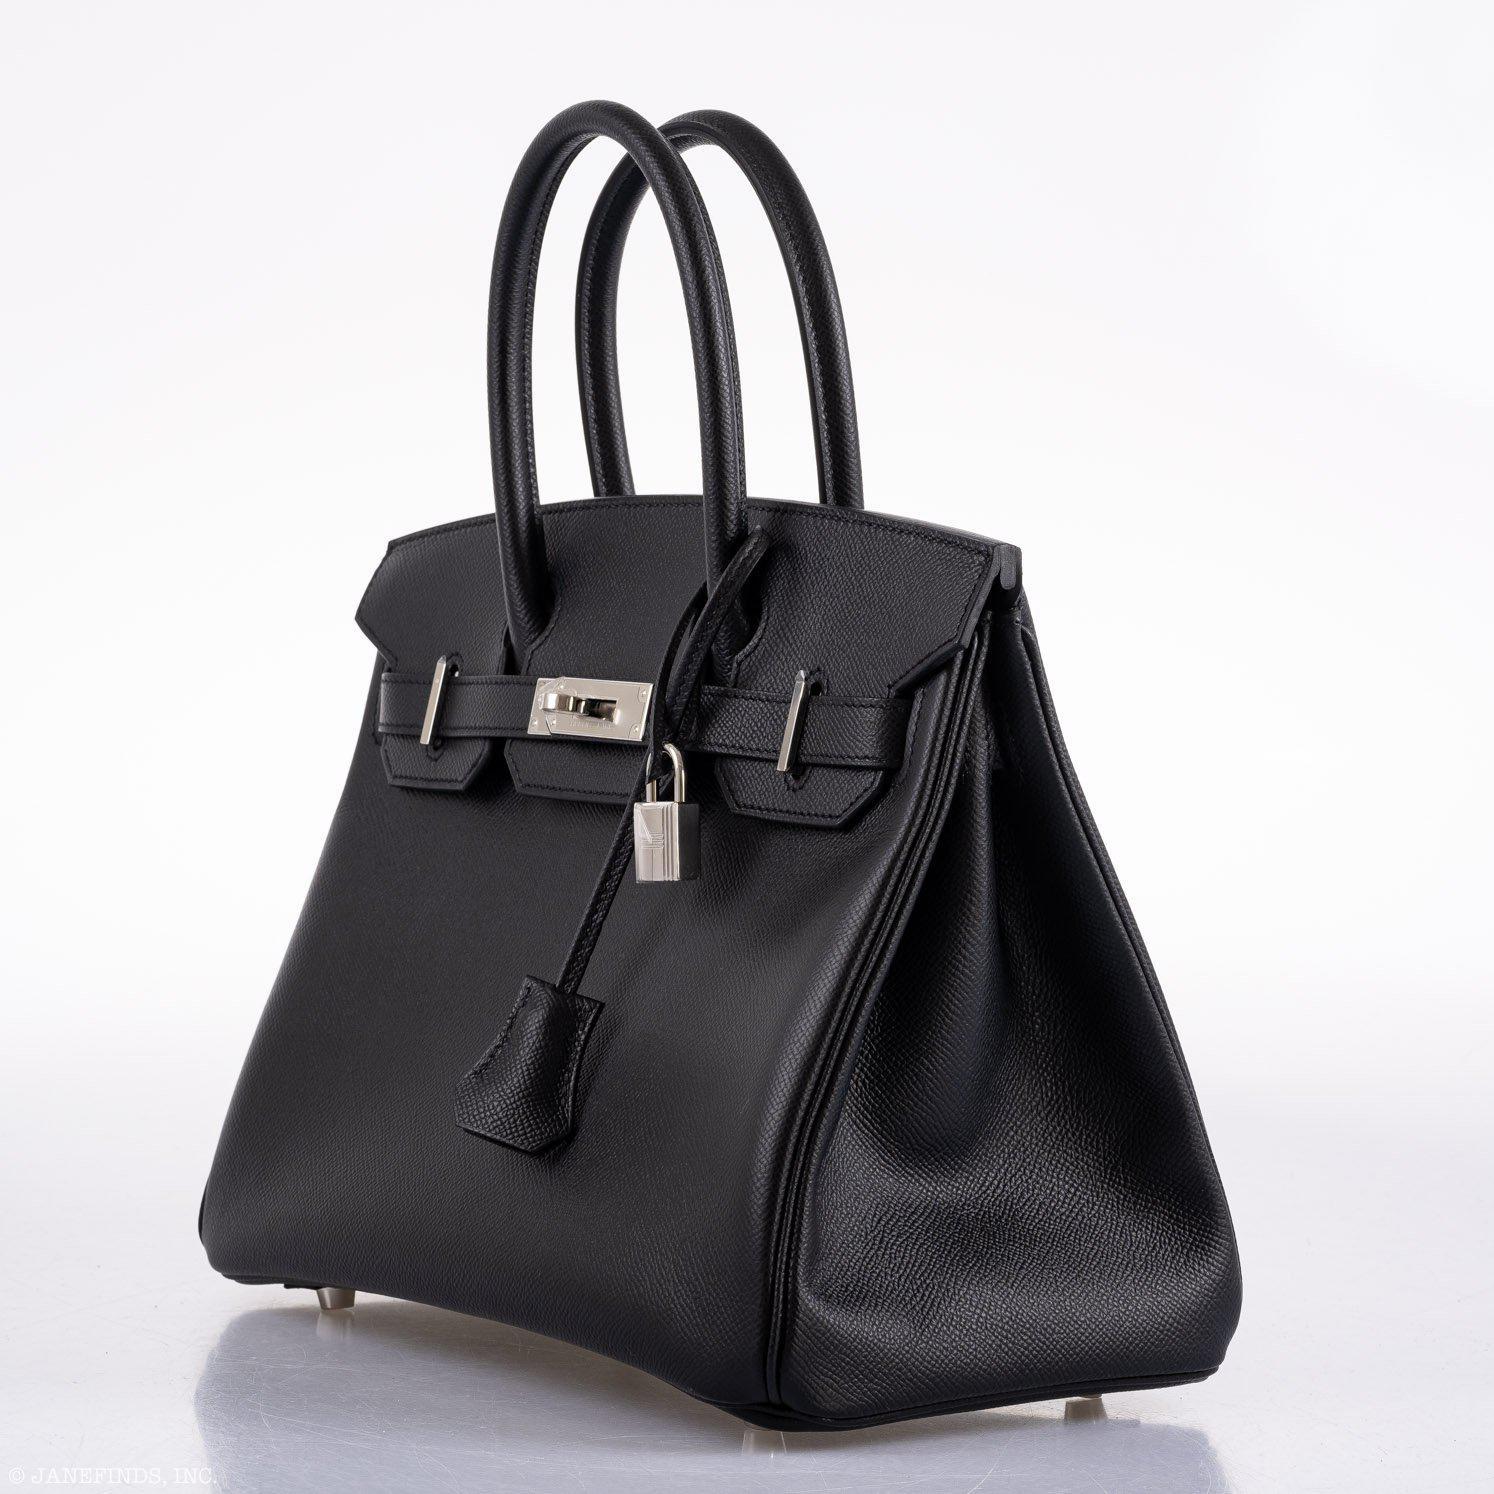 Hermès Birkin 30 Black Epsom Palladium Hardware - 2020, Y